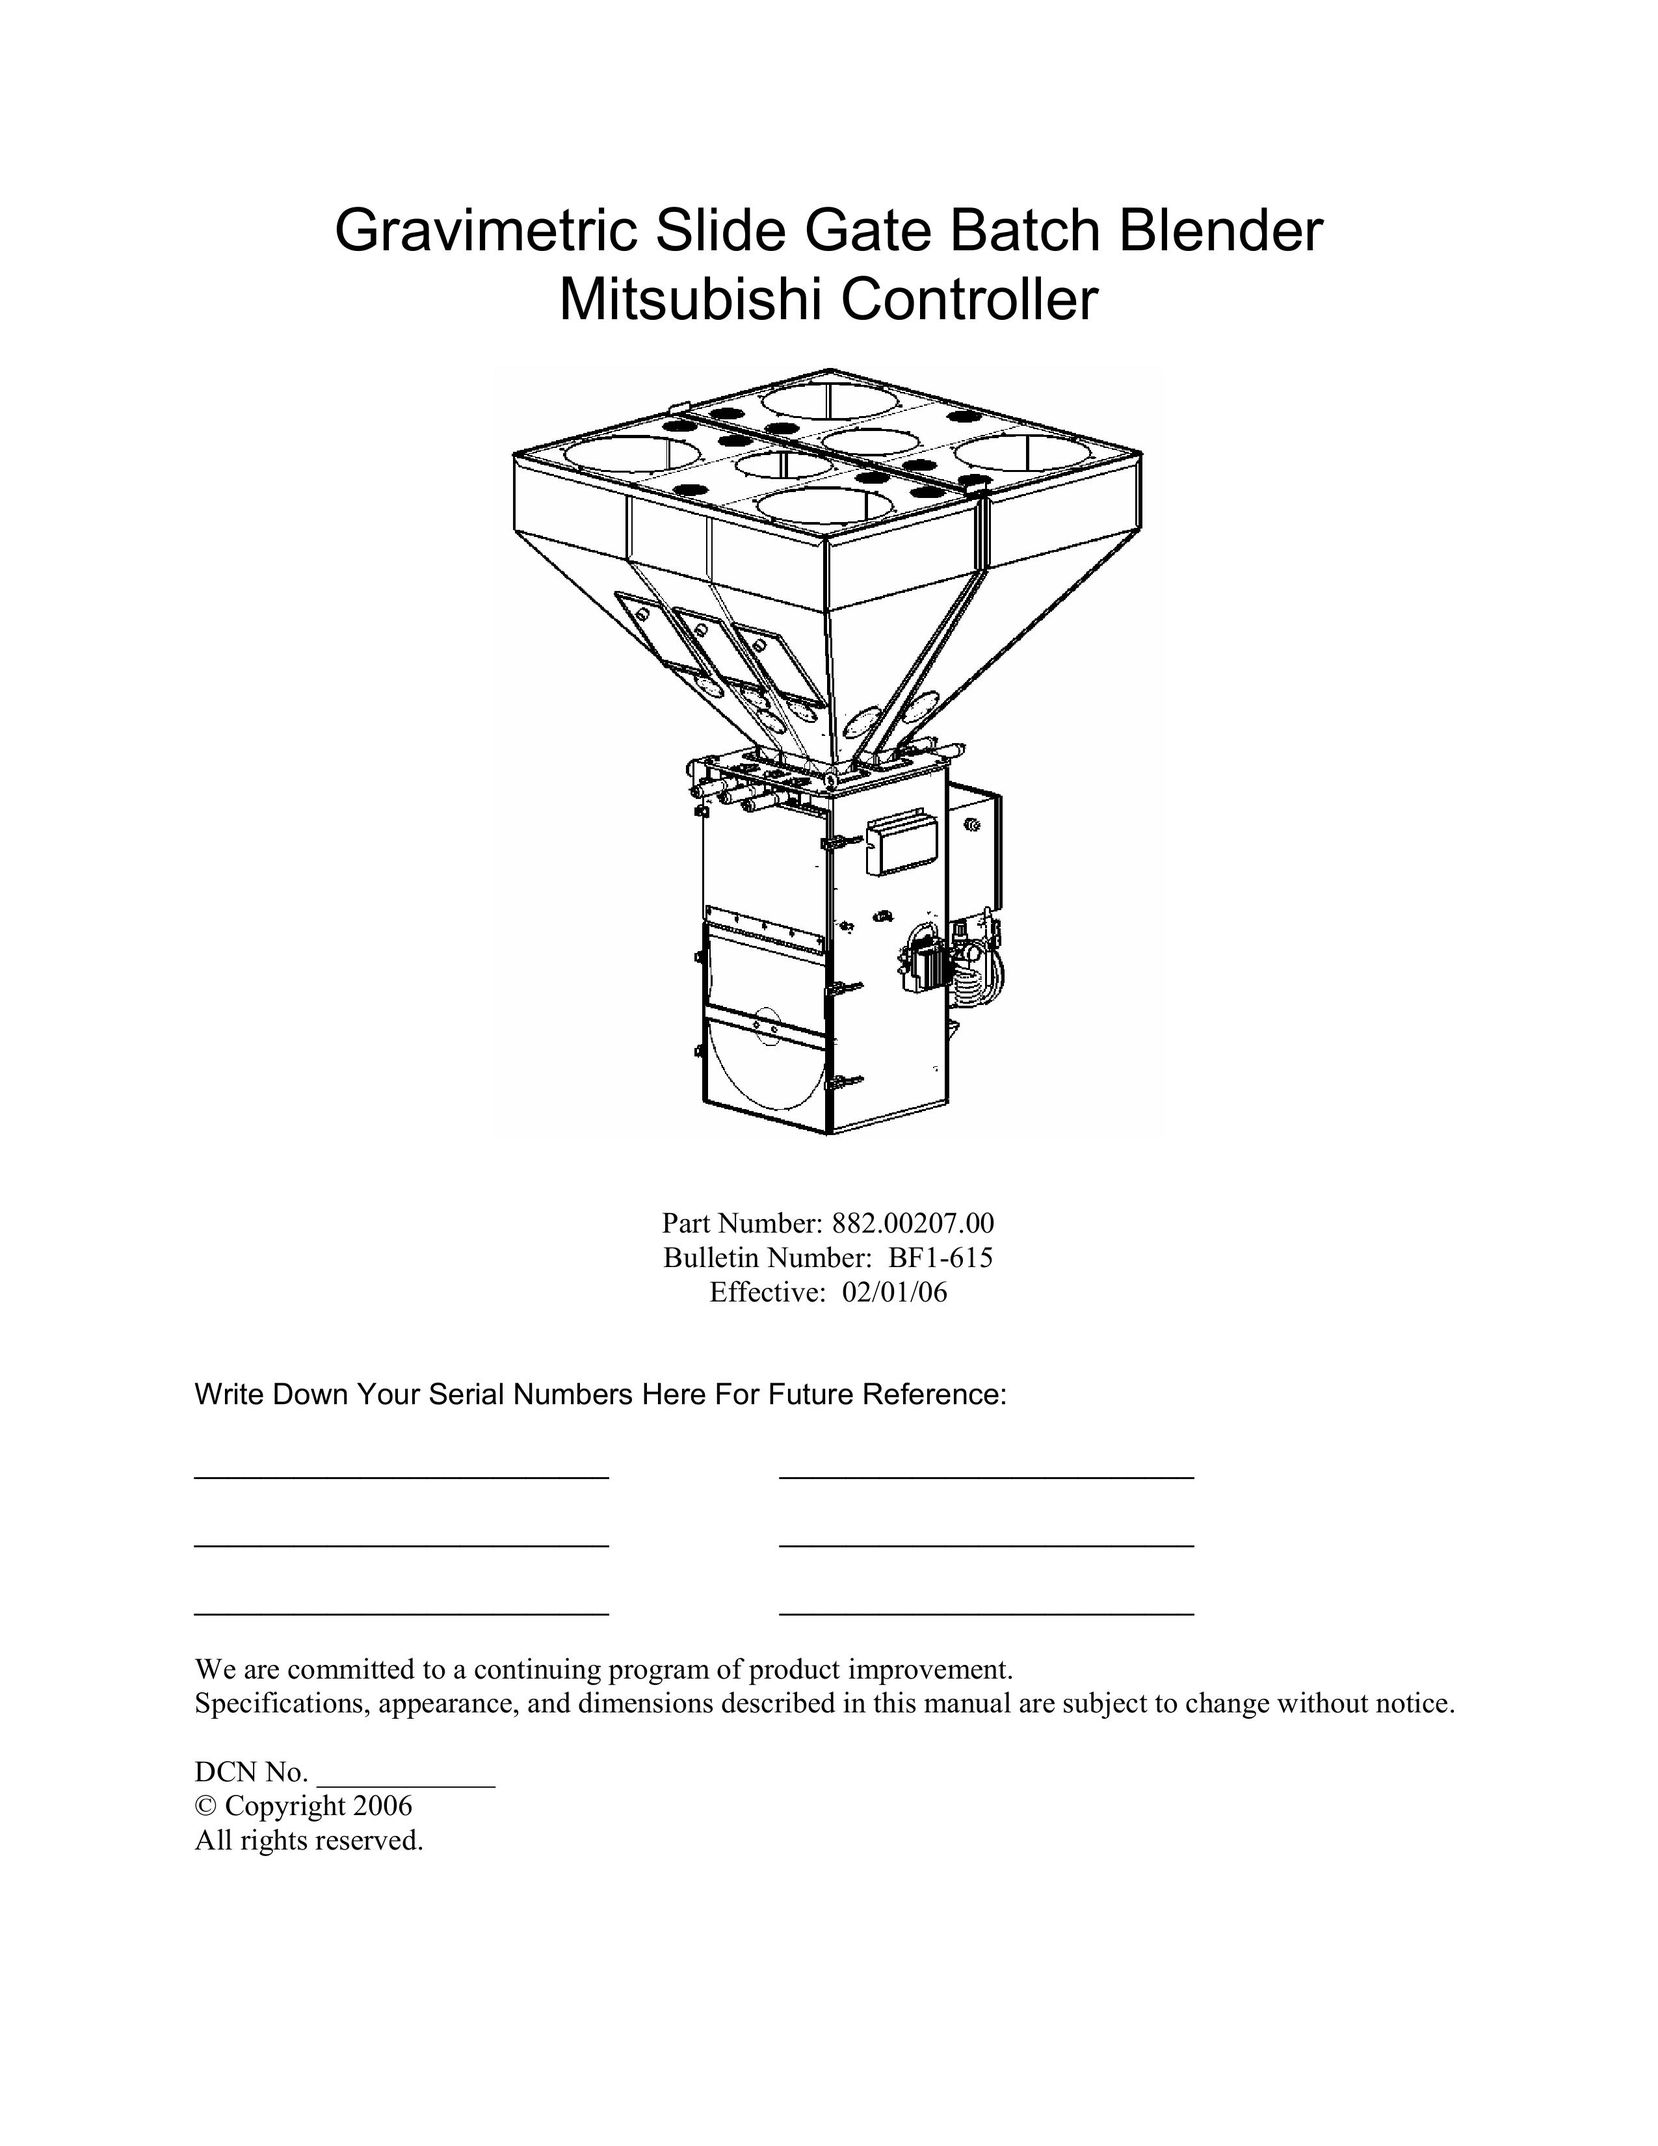 Mitsubishi Electronics 882.00207.00 Engraver User Manual